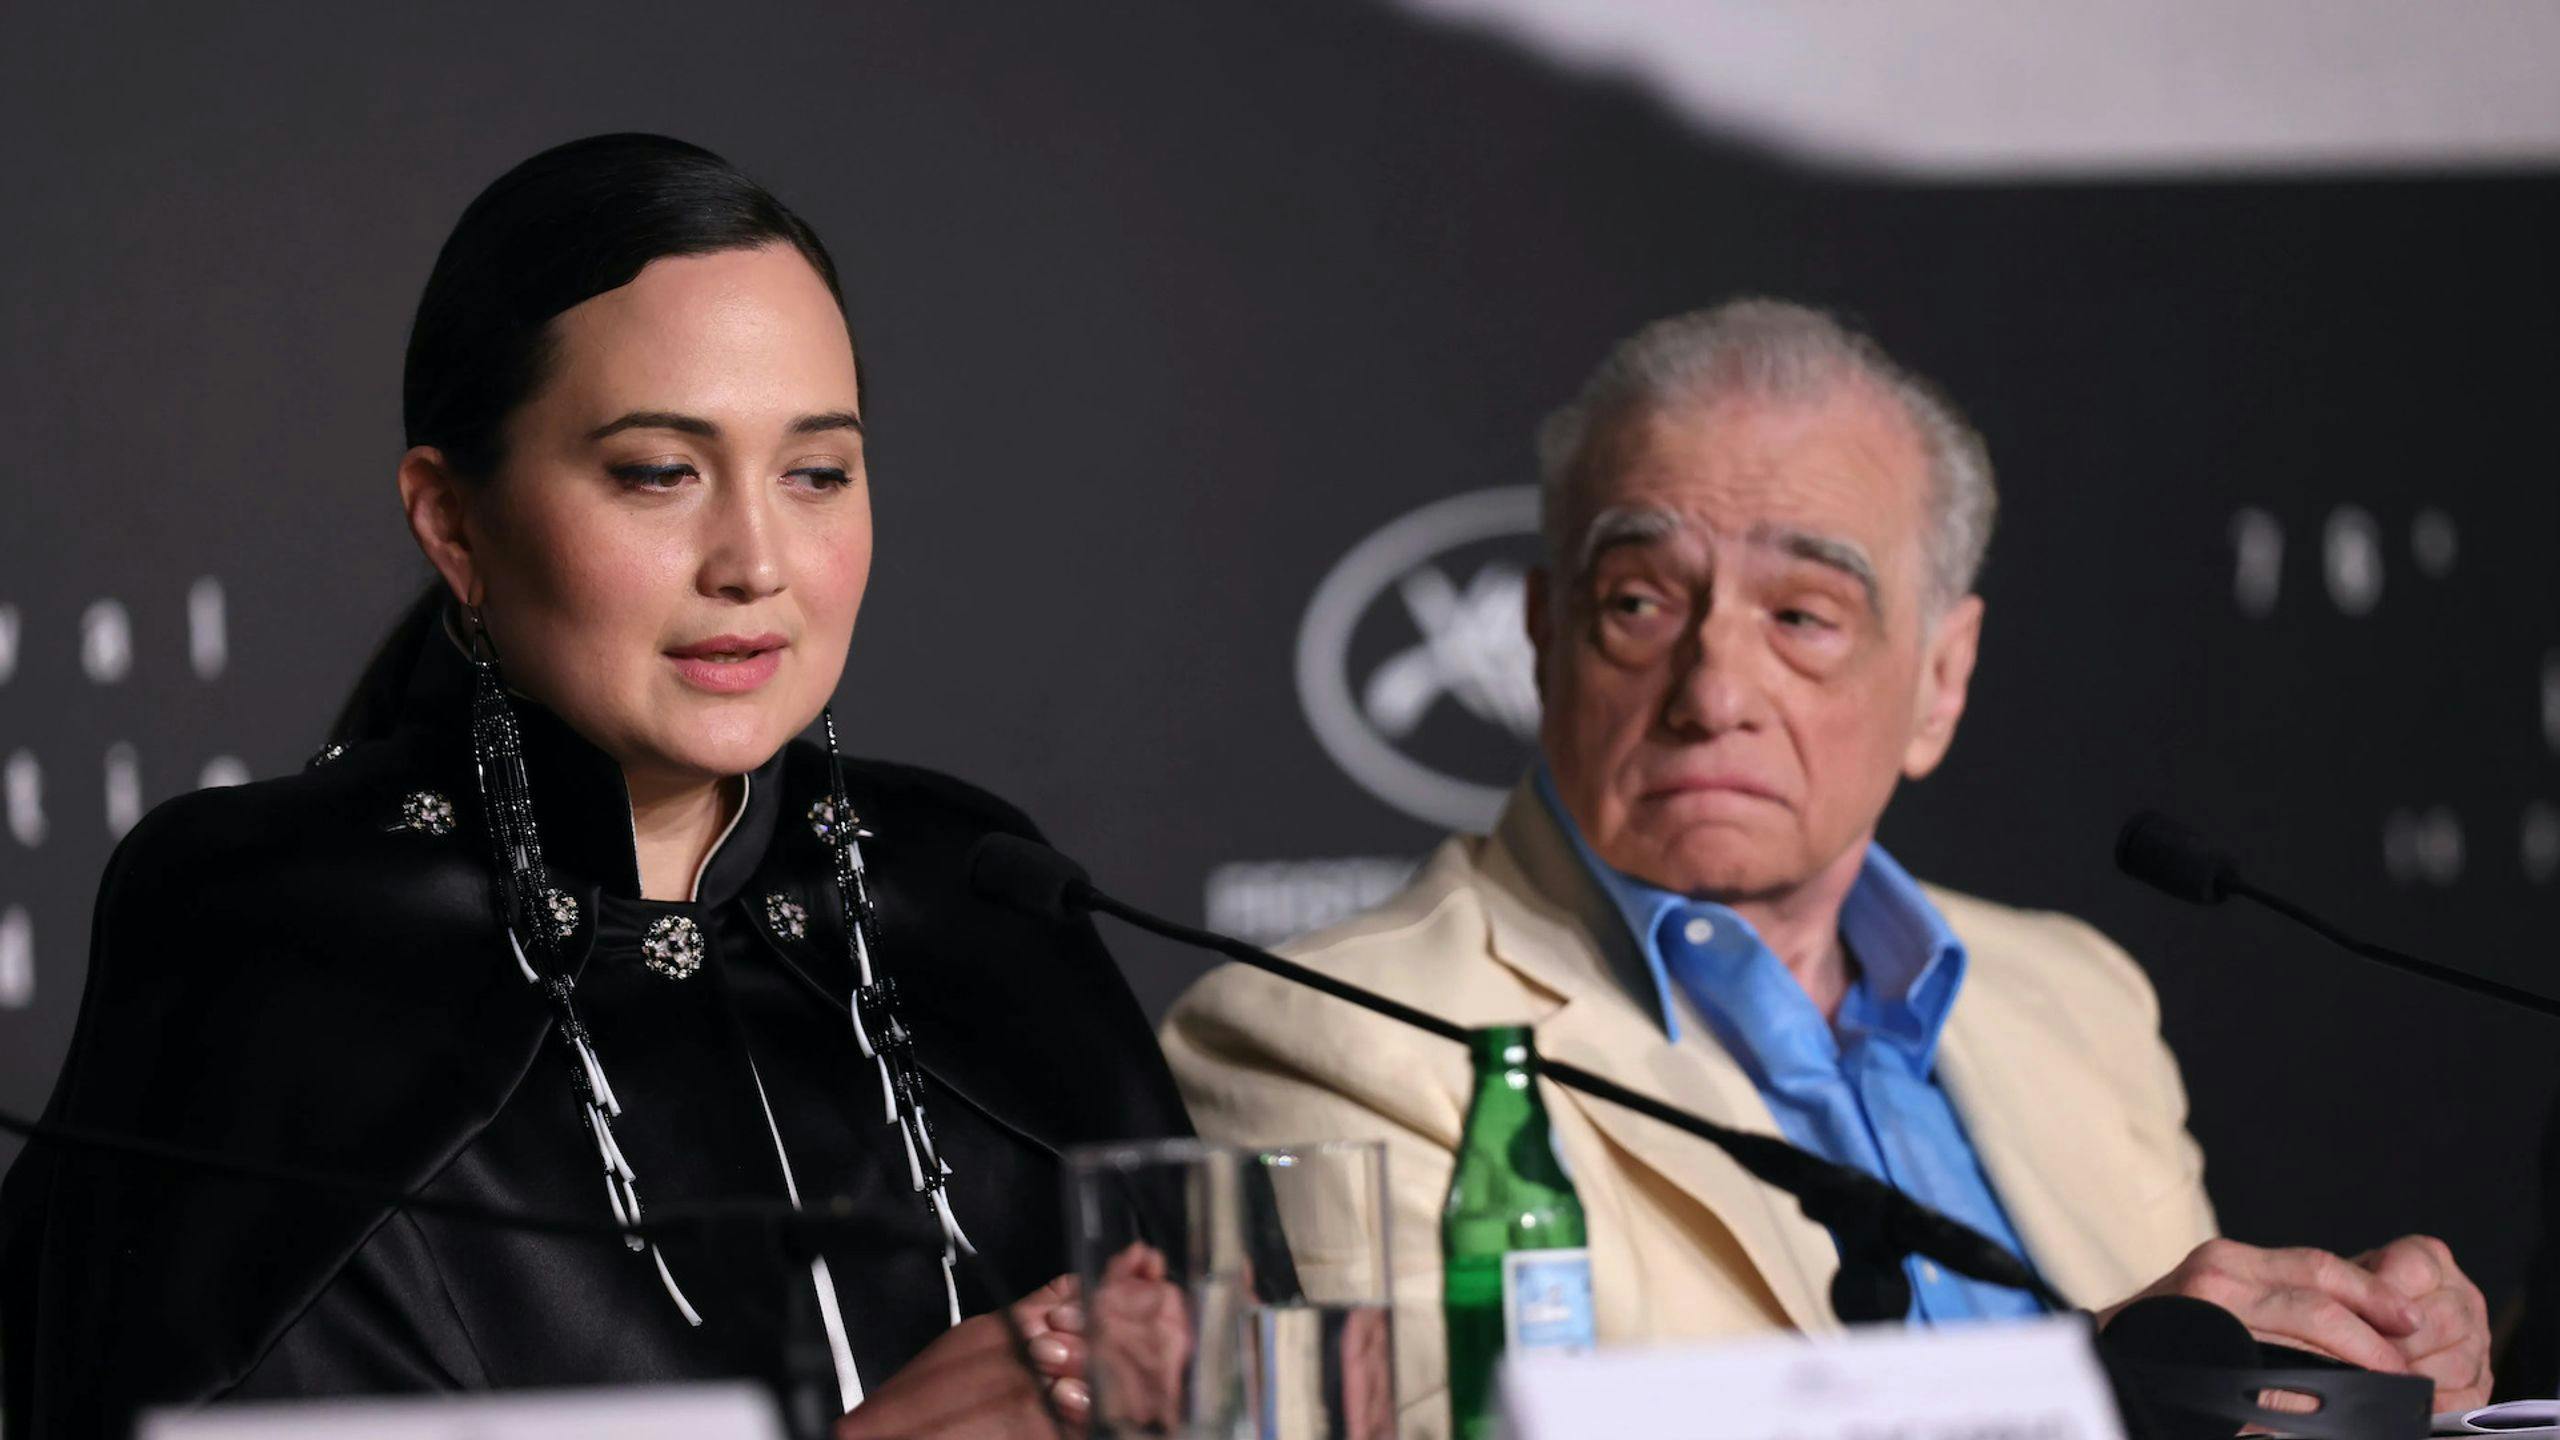 La actriz Lily Gladstone, junto al director Martin Scorsese durante una rueda de prensa en el Festival de Cannes